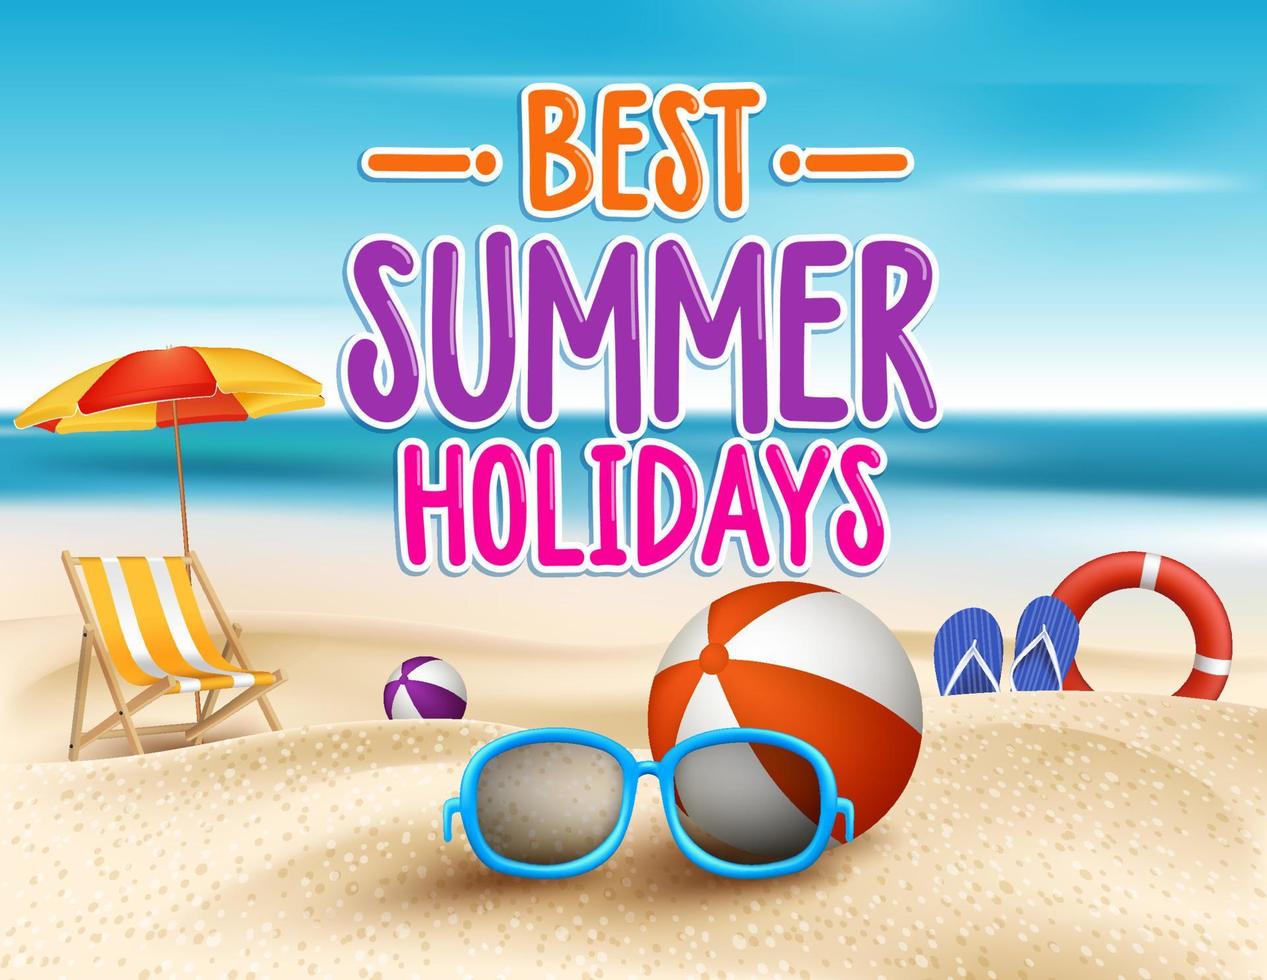 beste zomervakantie titel woorden vector in strand kust met zomerse buitenelementen.